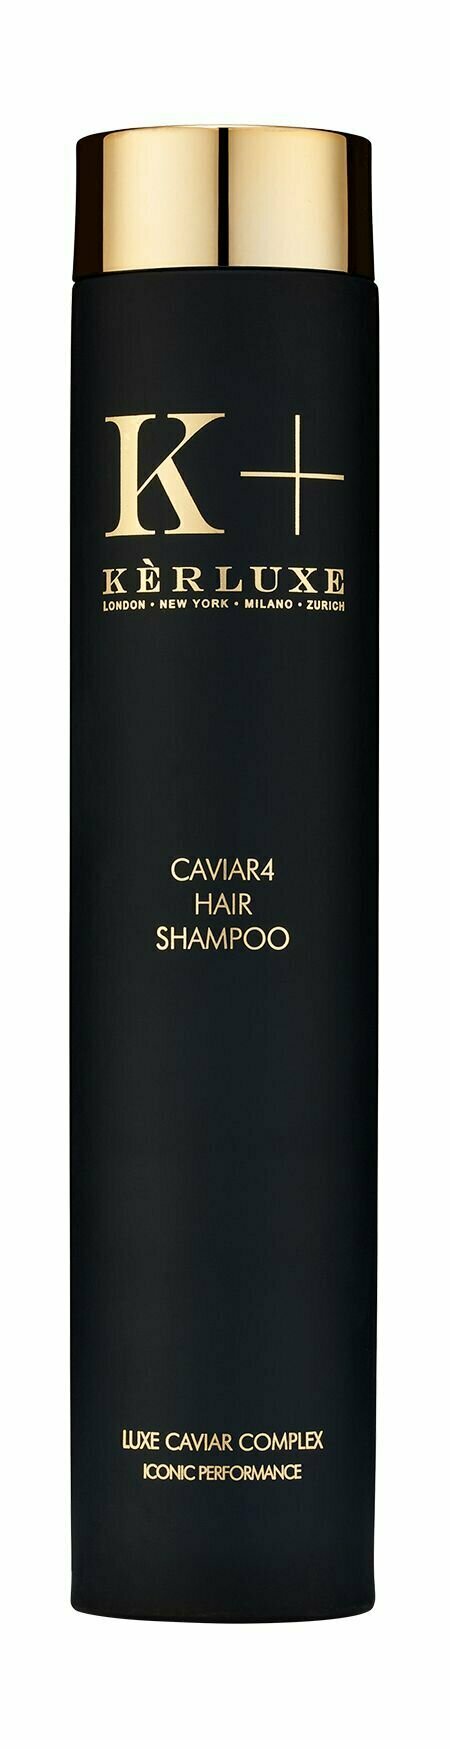 Шампунь для питания и восстановления волос с икорными эстрактами / Kerluxe Caviar4 Hair Shampoo